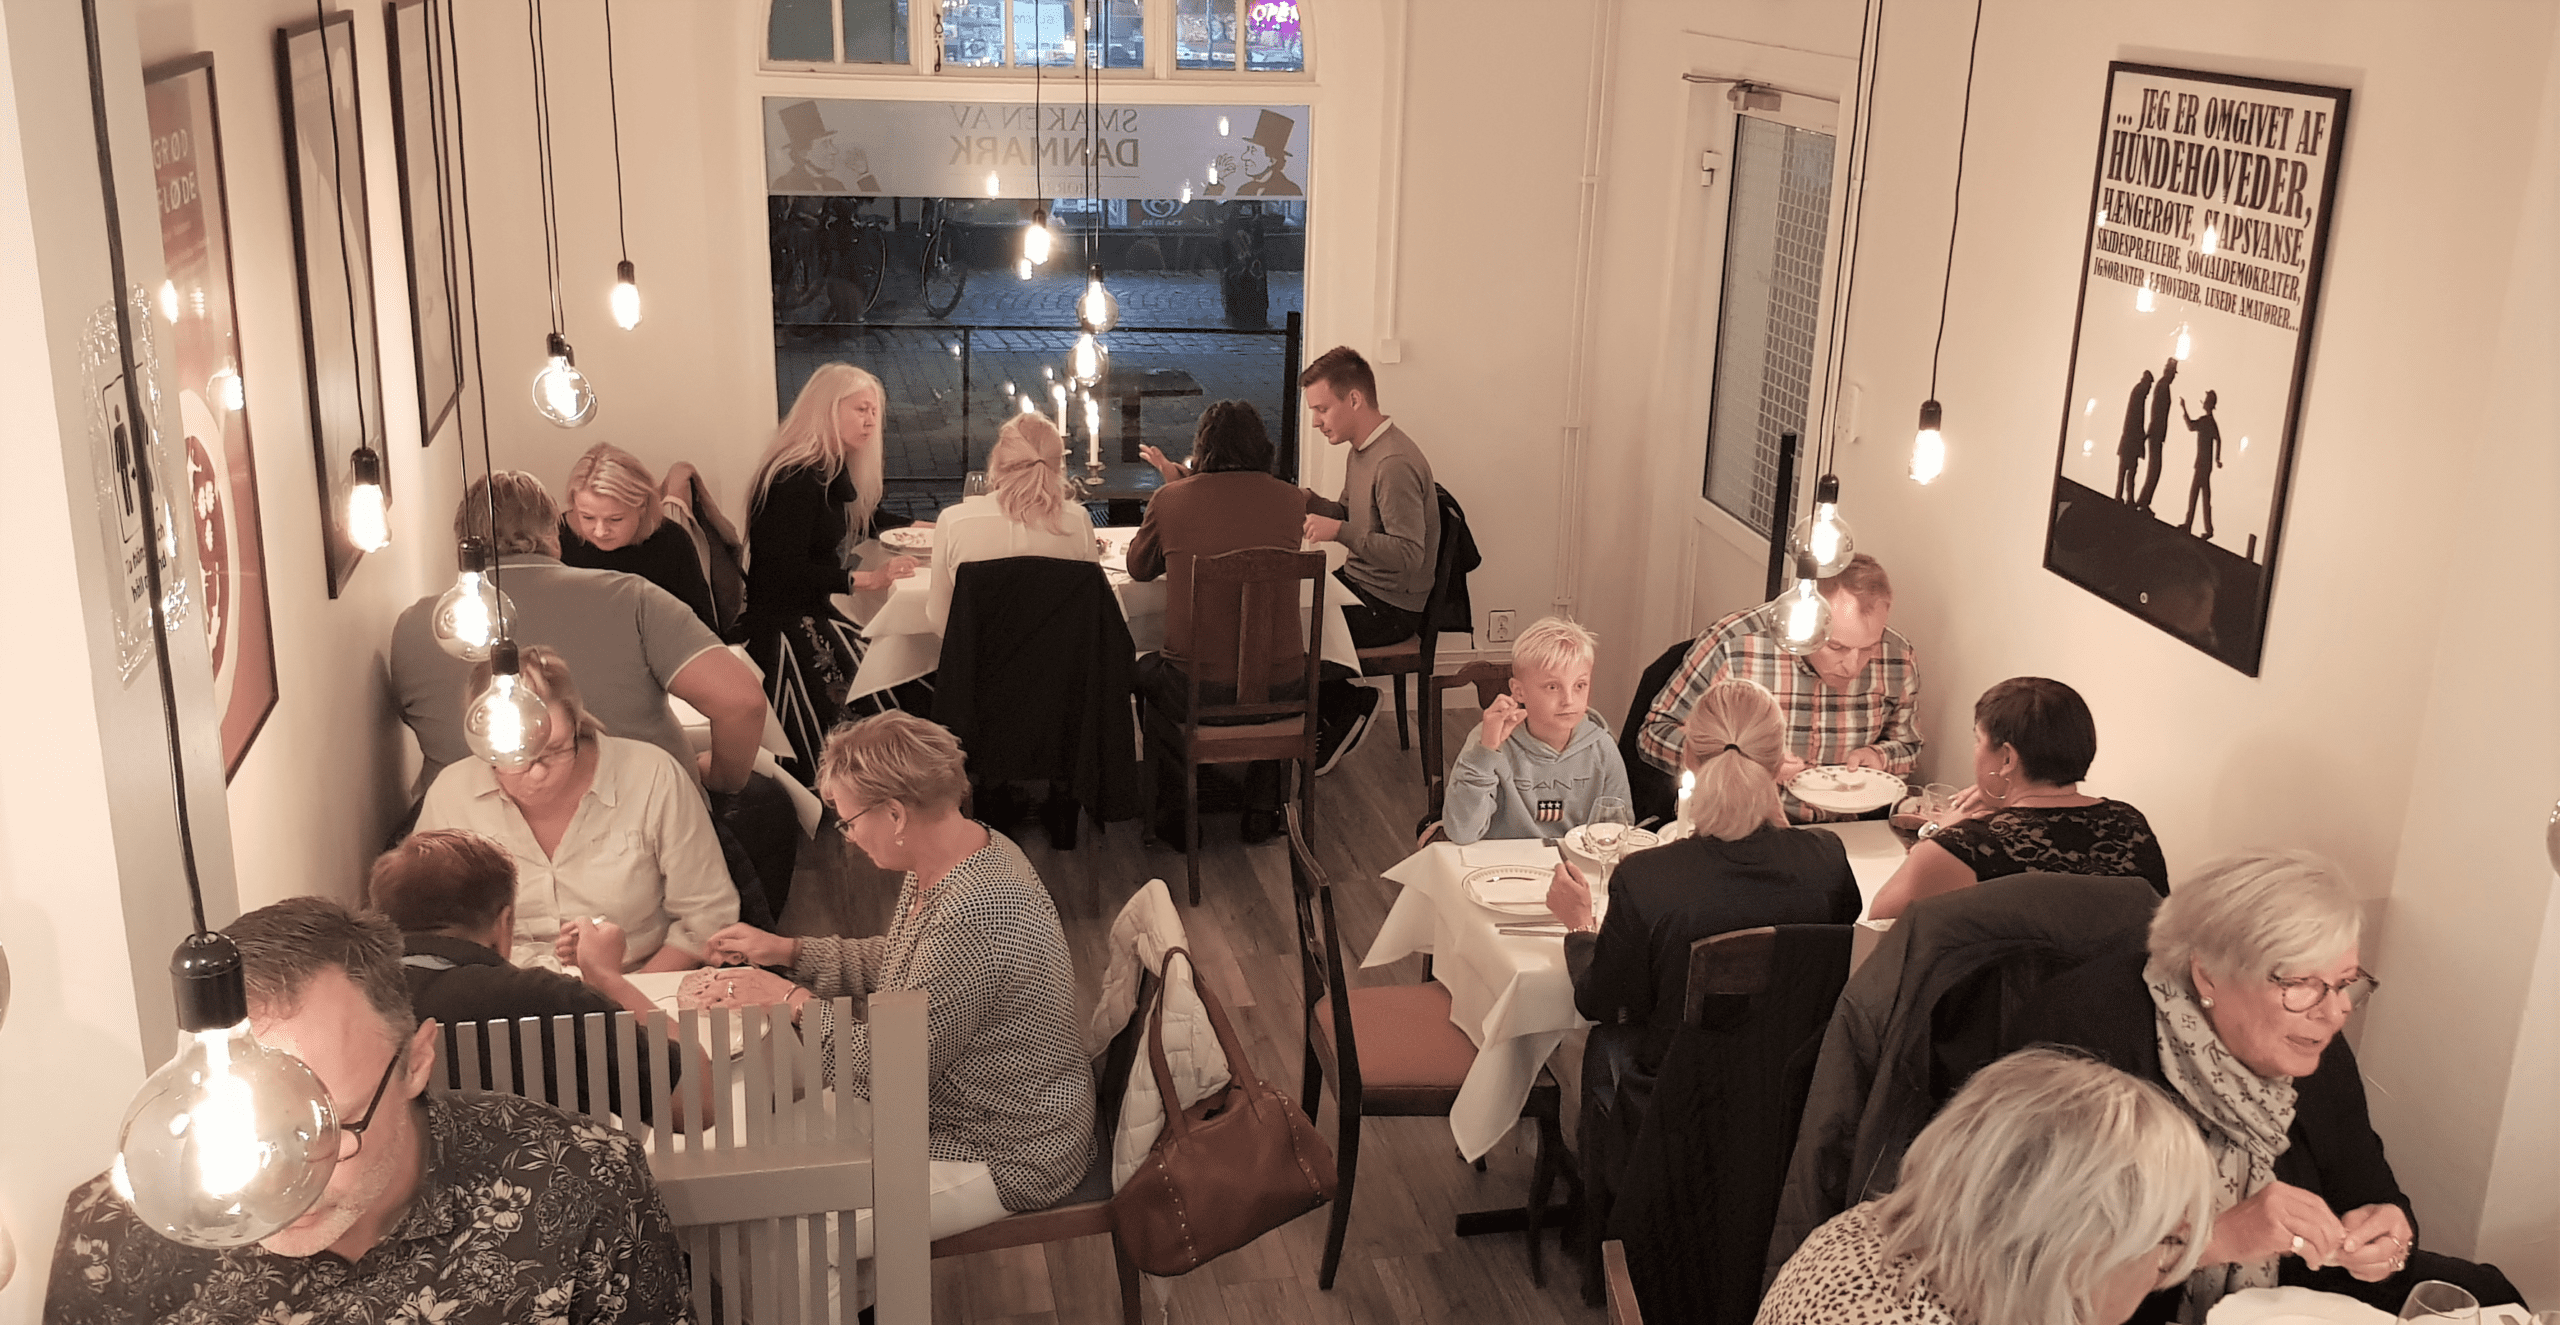 Café/bistro med attraktivt läge i charmiga gamla staden i Malmö